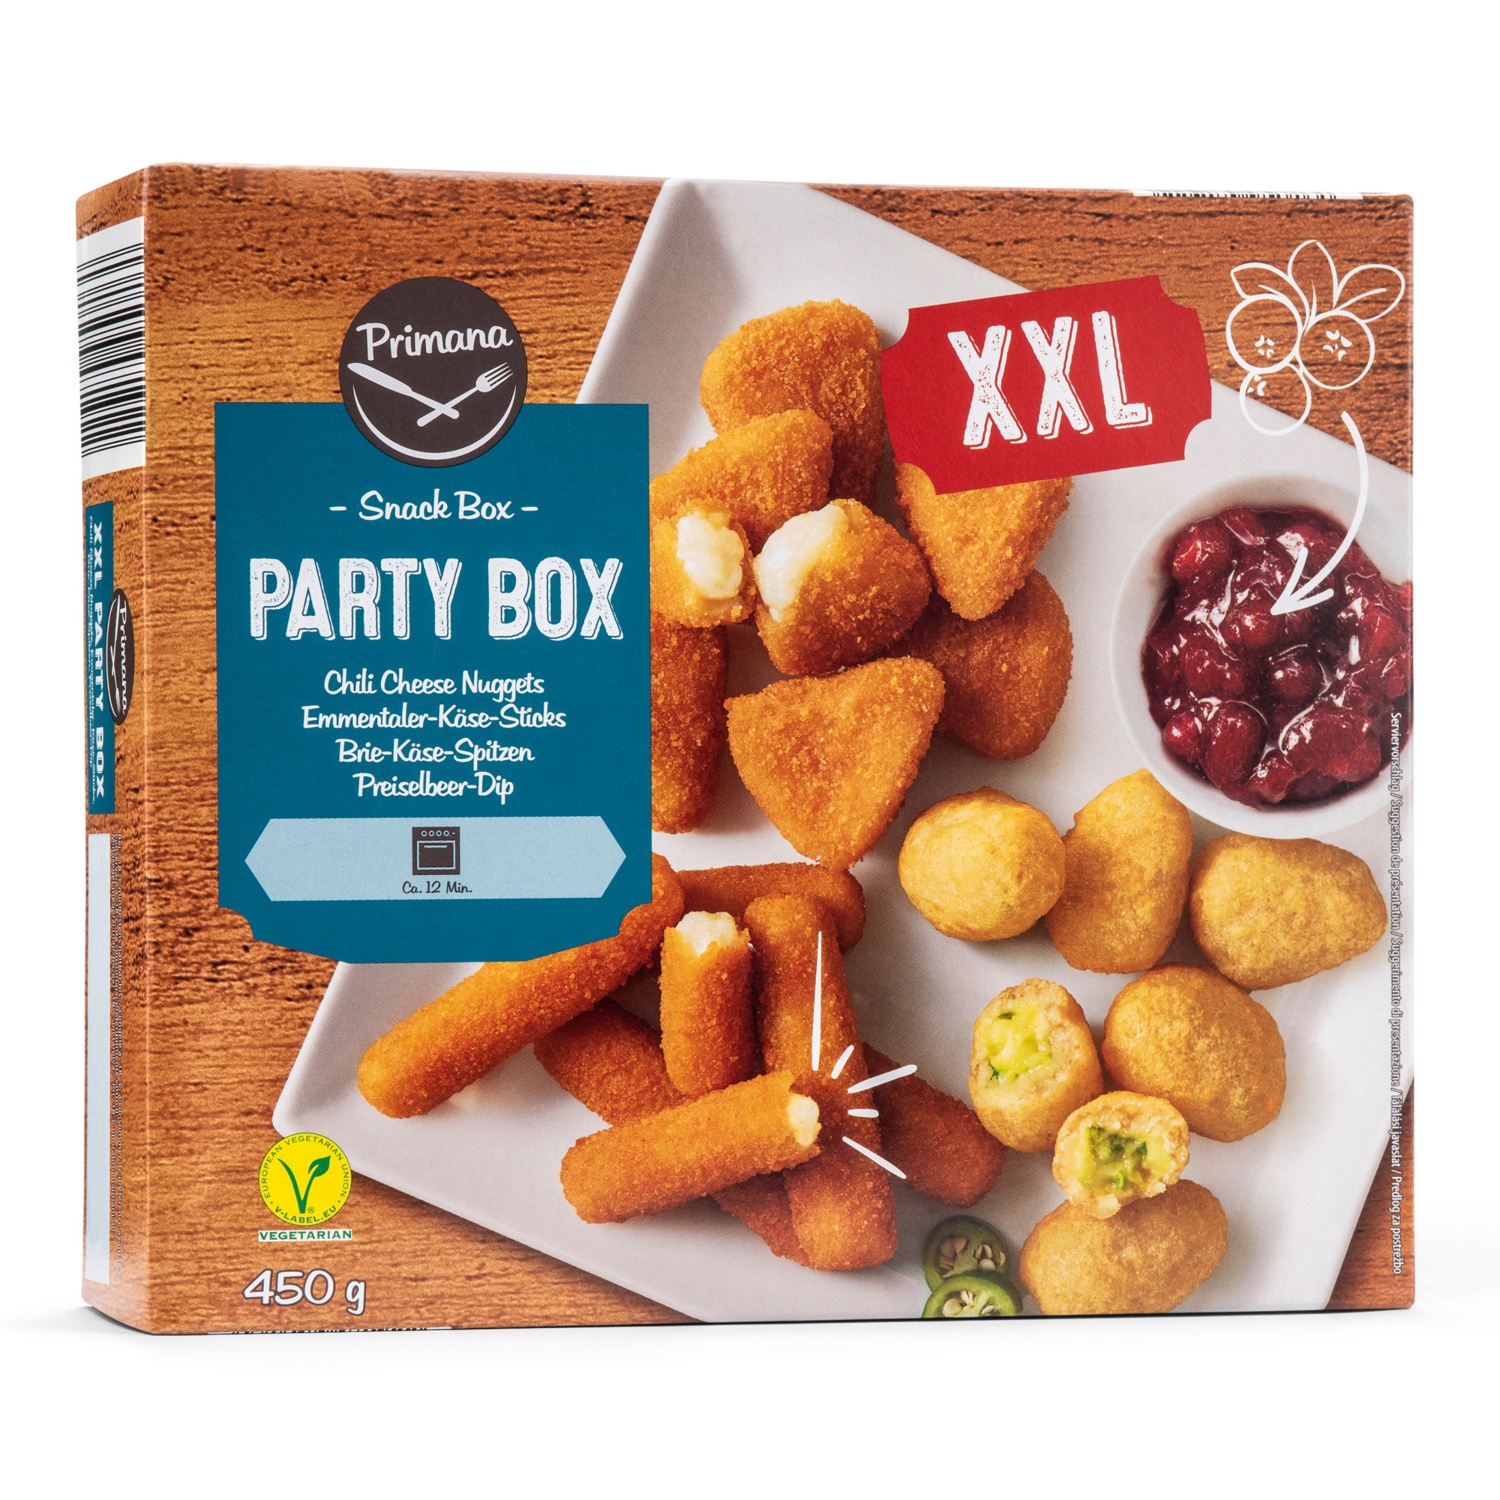 PRIMANA Party Snackbox XXL, Box 3